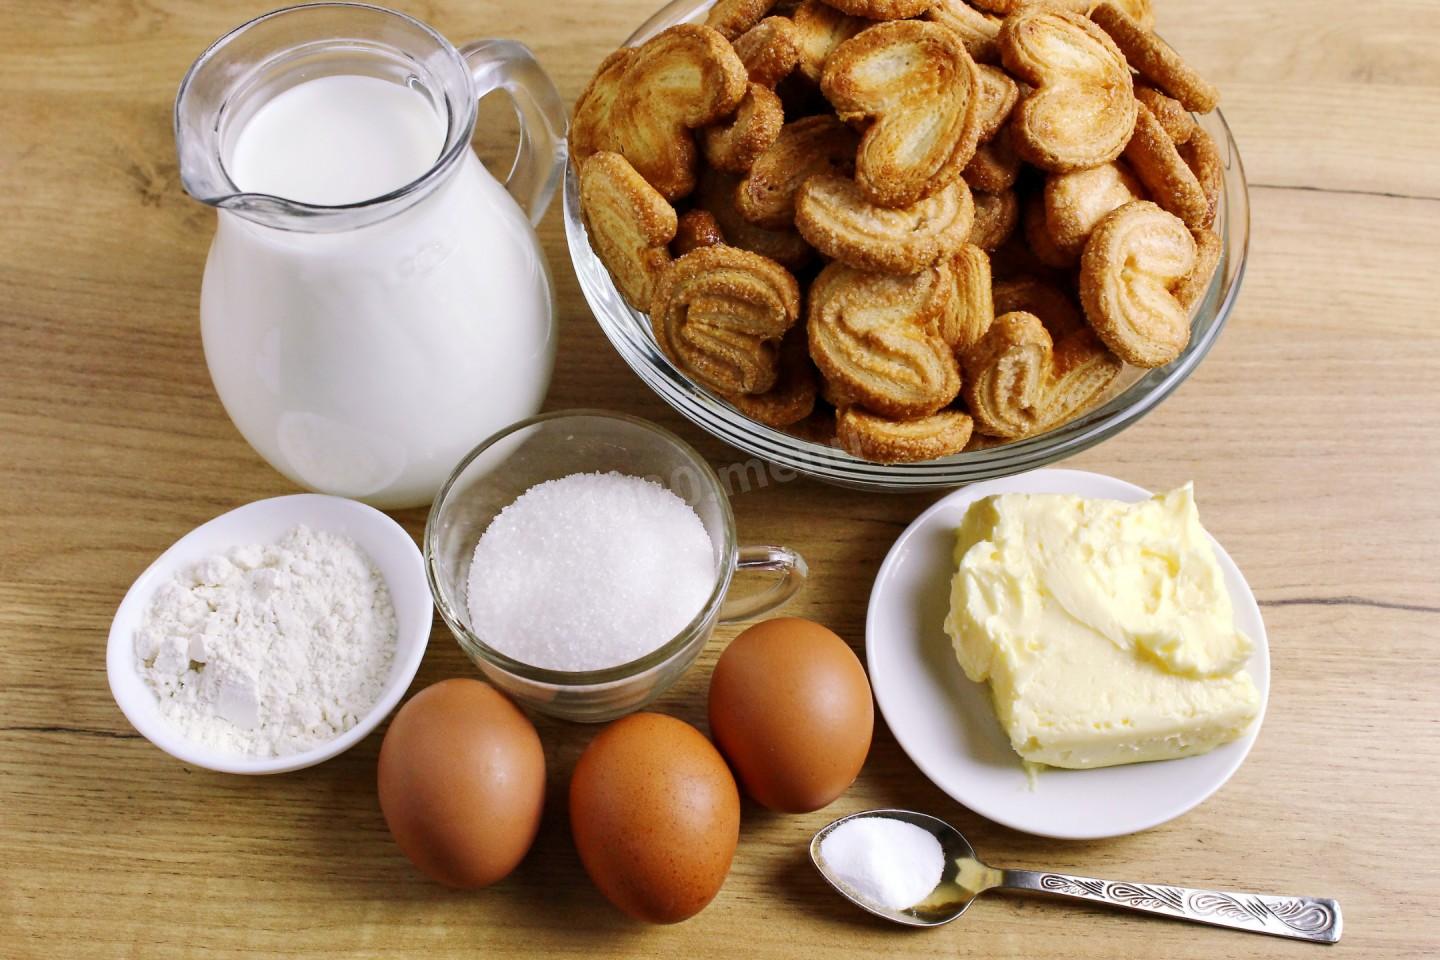 Крем молоко яйцо сахар масло мука. Печения из муки и молока и яиц. Пирог с молоком. Наполеон из печенья ушки. Масленица мука молоко яйца масло.